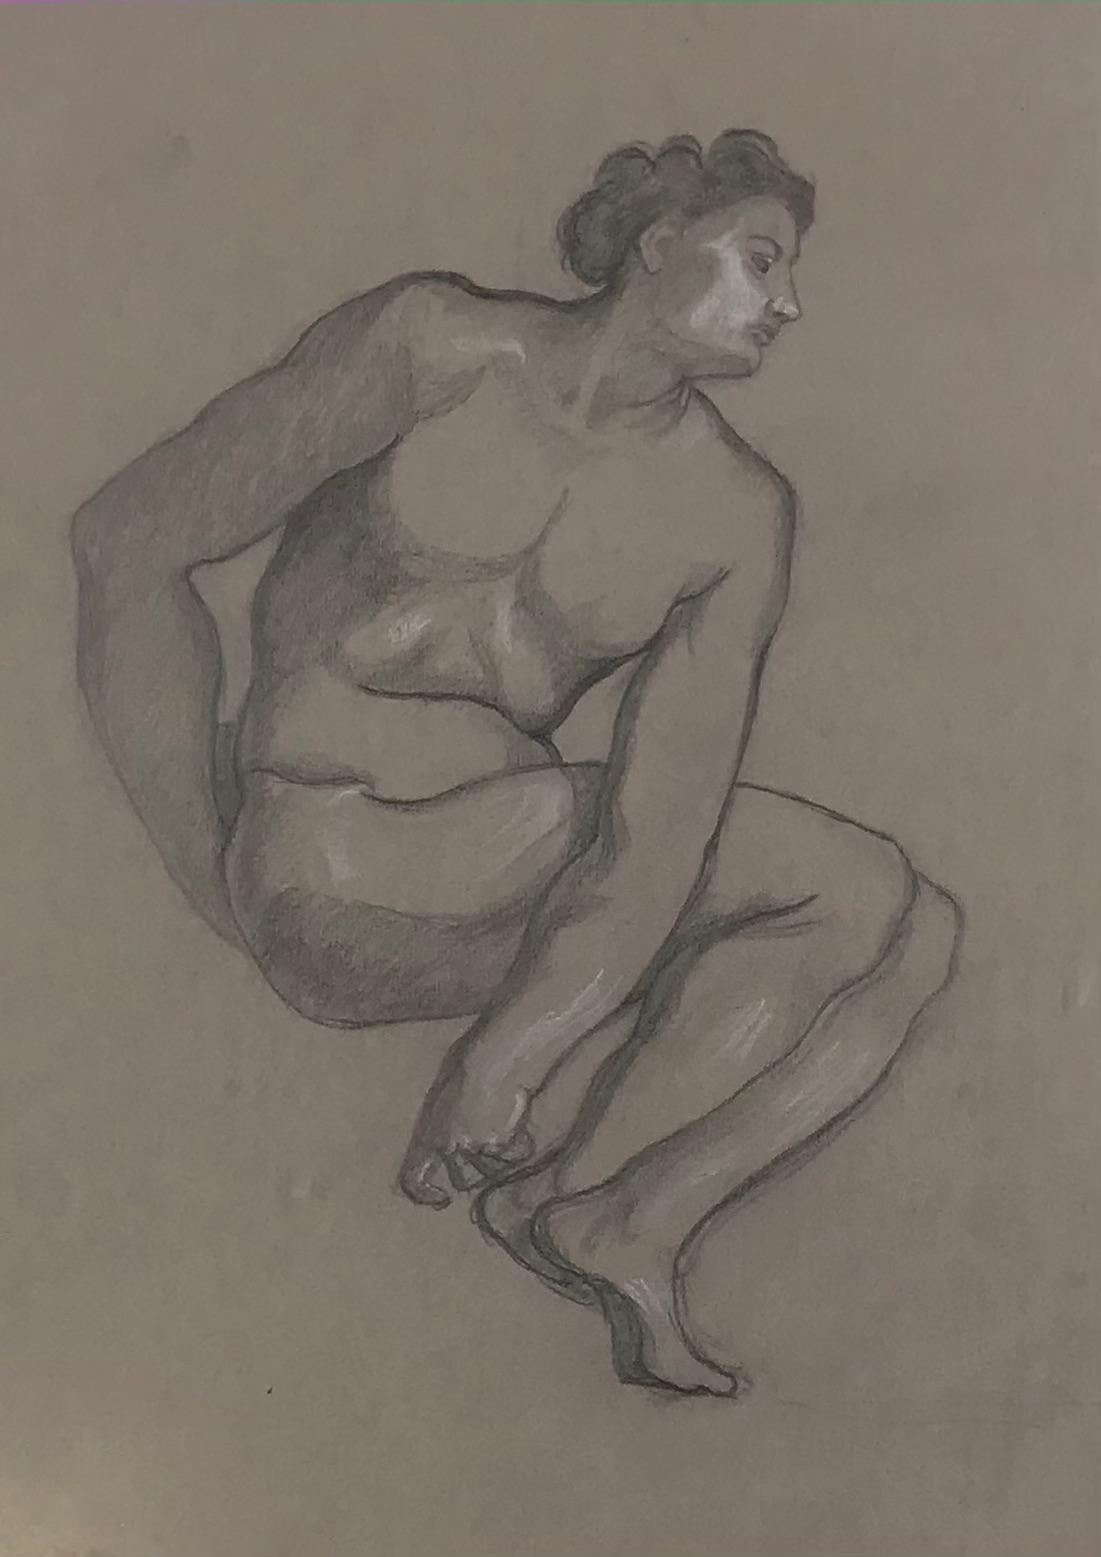 Luigi Russolo Figurative Art - Male Nude - Original Pencil and White Lead on Paper by L. Russolo - 1920s